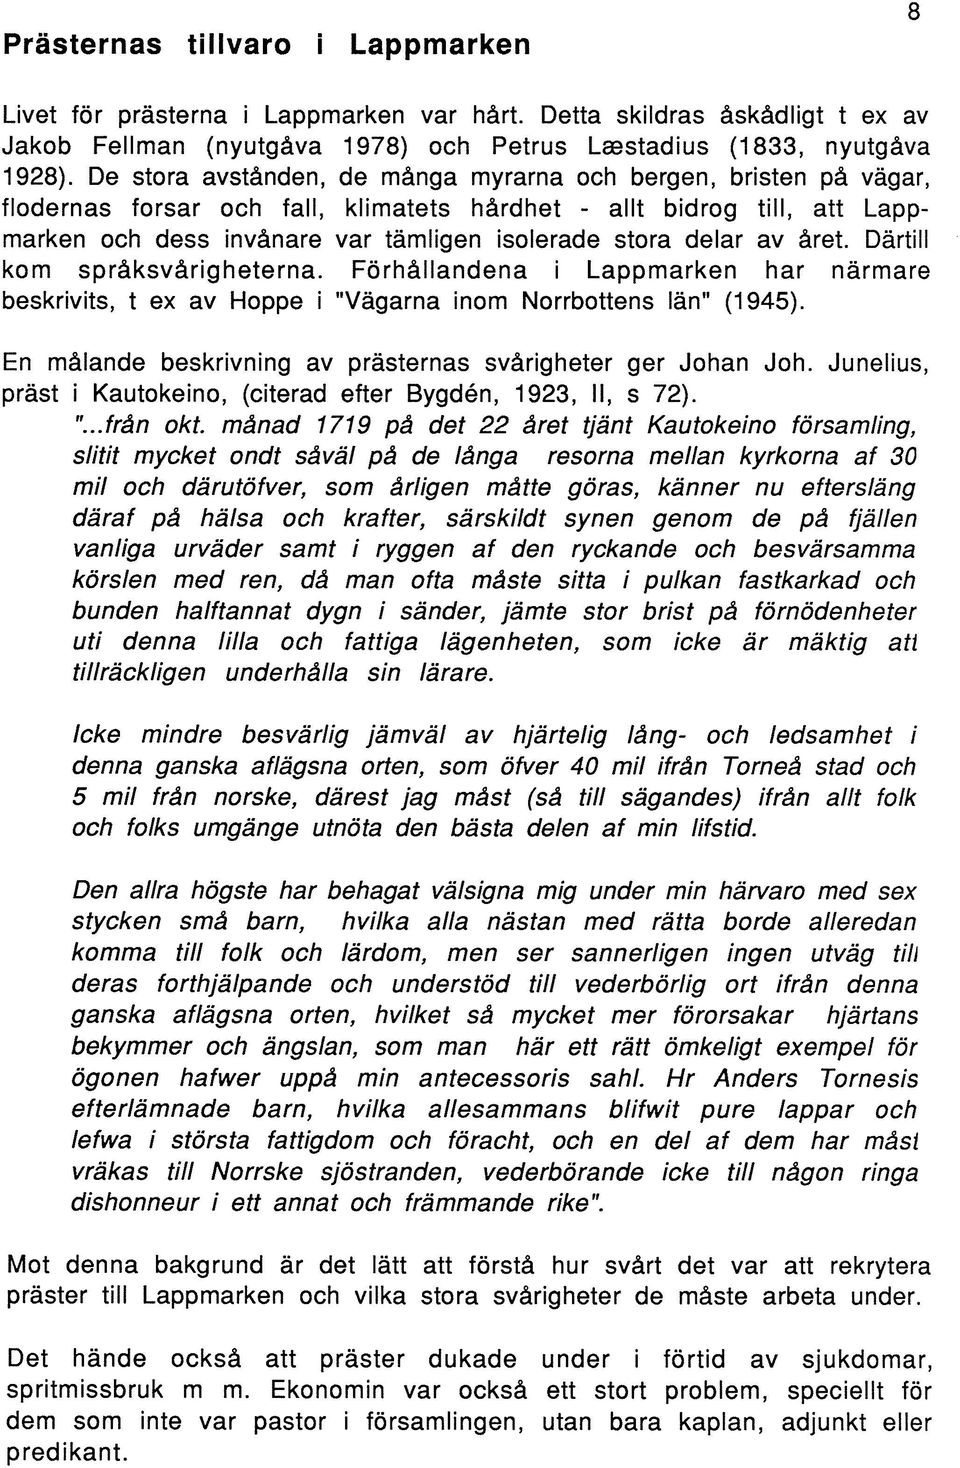 av året. Därtill kom språksvårigheterna. Förhållandena i Lappmarken har närmare beskrivits, t ex av Hoppe i "Vägarna inom Norrbottens län" (1945).